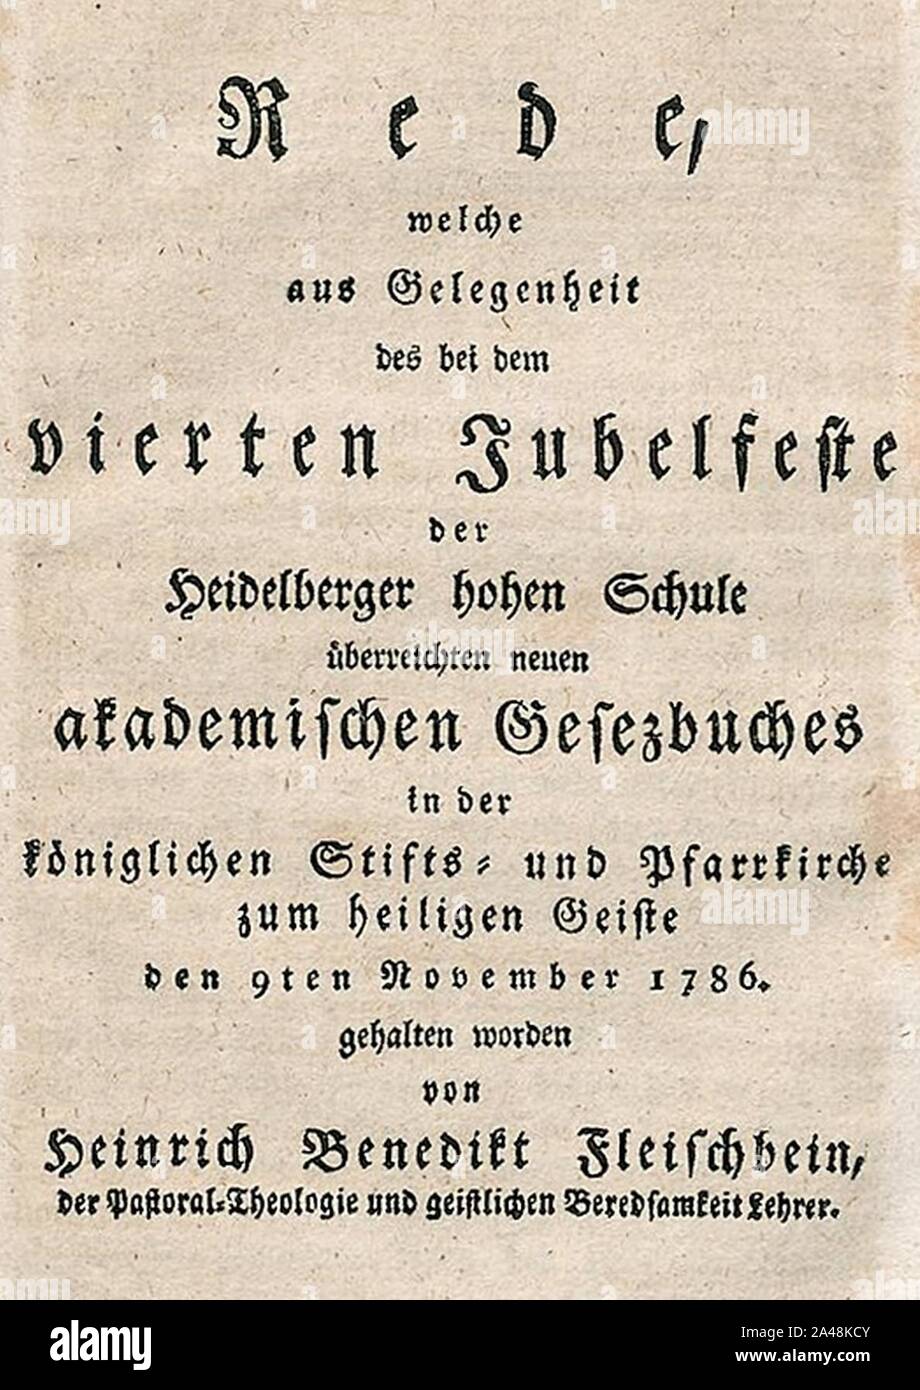 Fleischbein Jubelpredigt 1786. Stockfoto